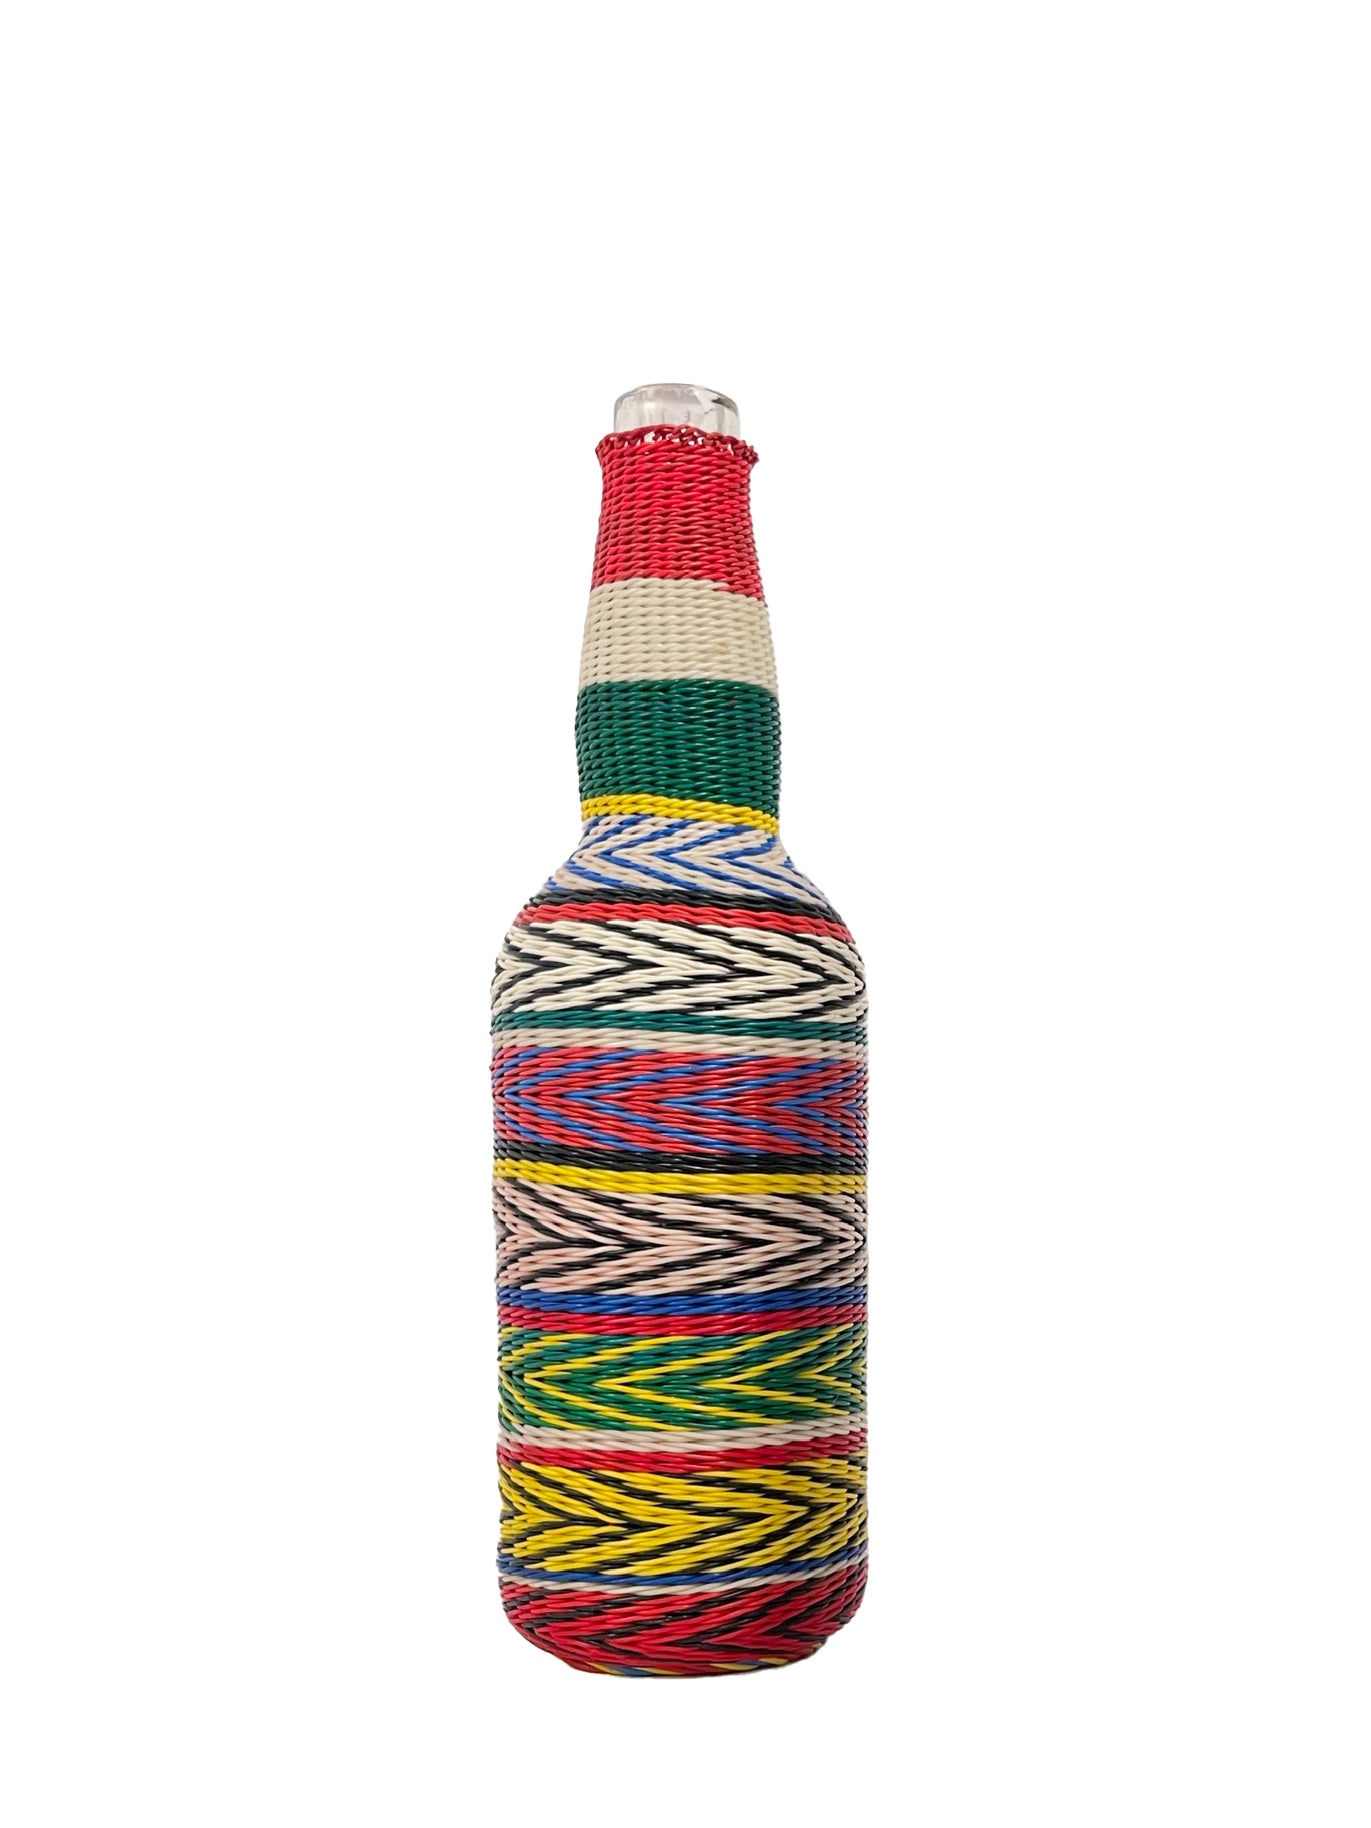 Artisanal Balkan woven glass bottle